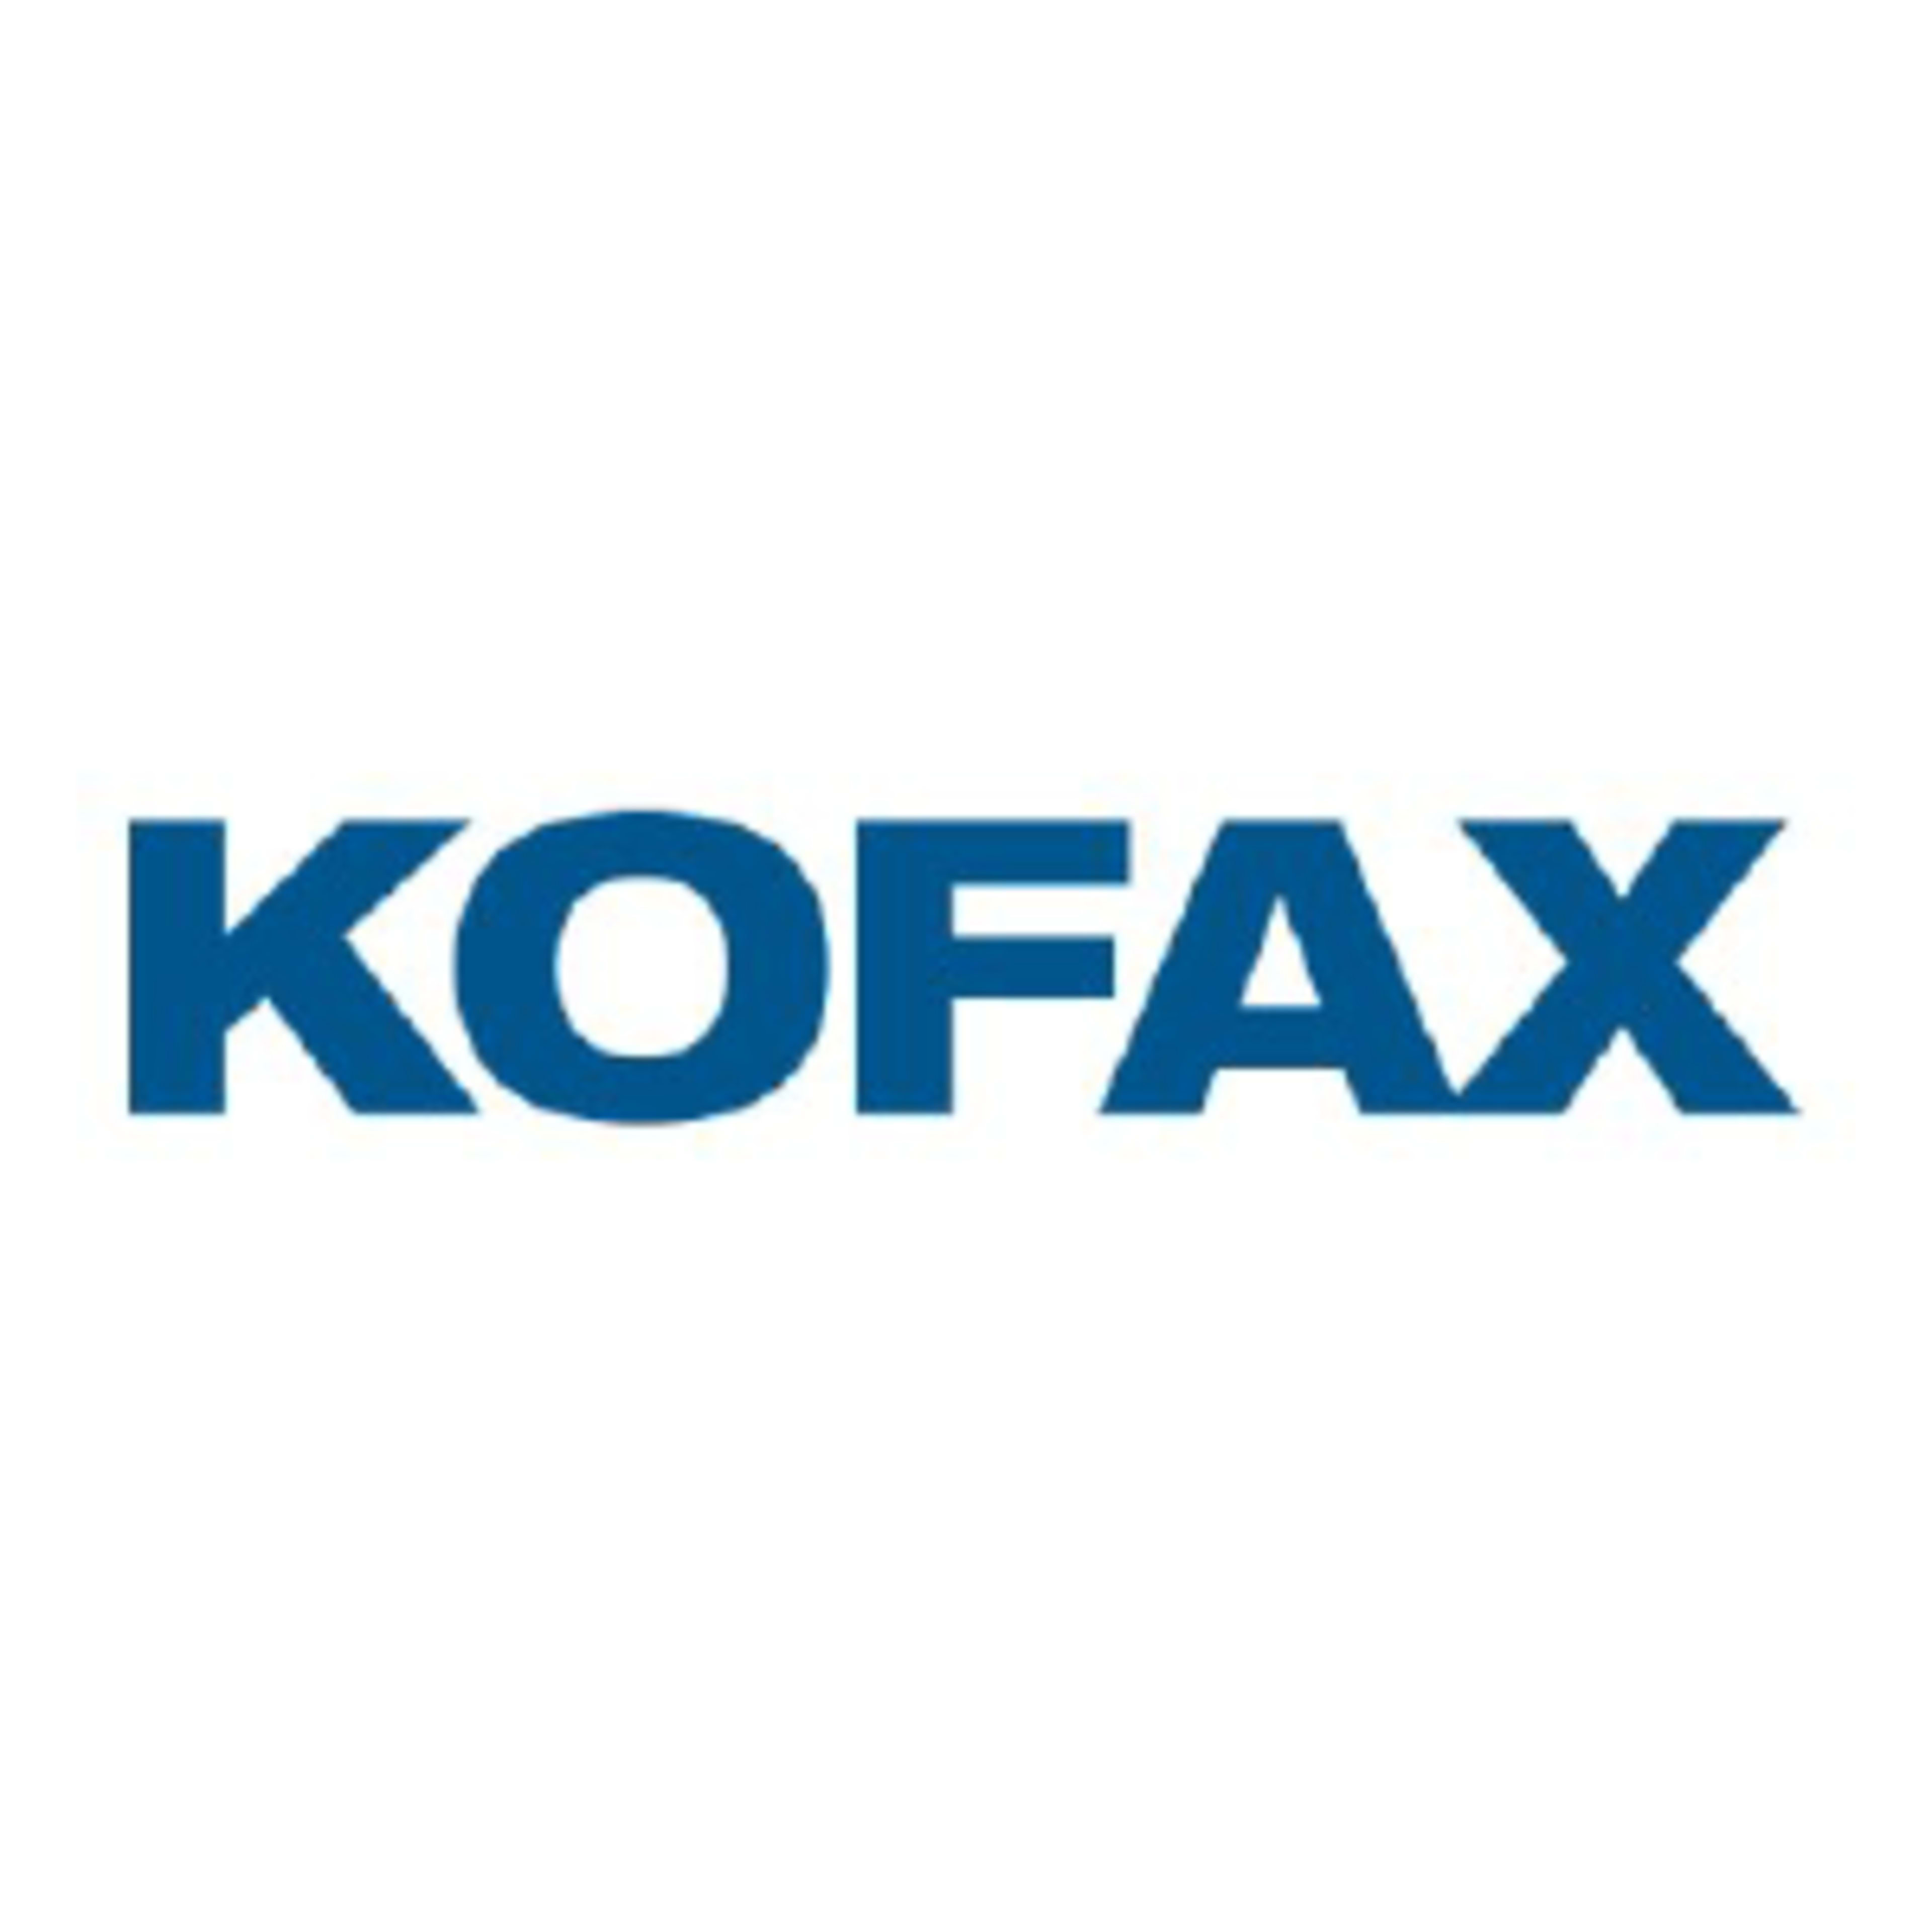 KofaxCode